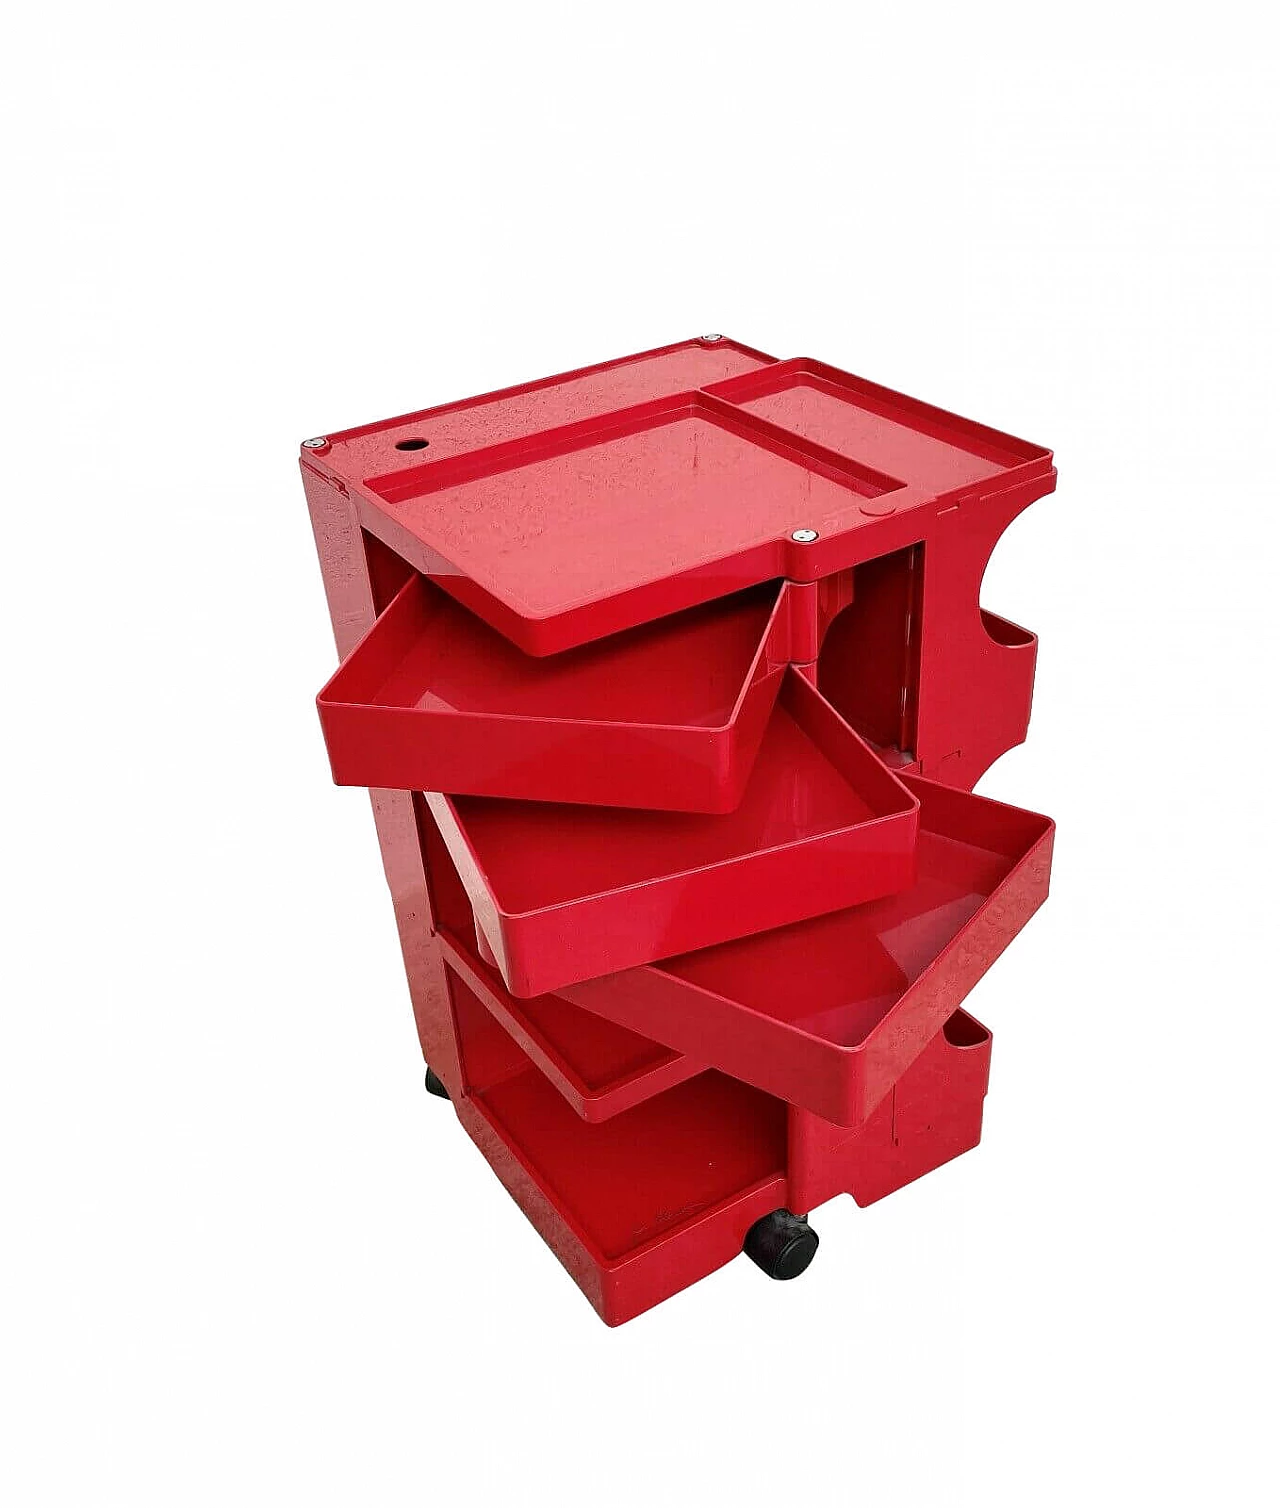 Boby cart in red plastic by Joe Colombo for Bieffeplast, 70s 1280739